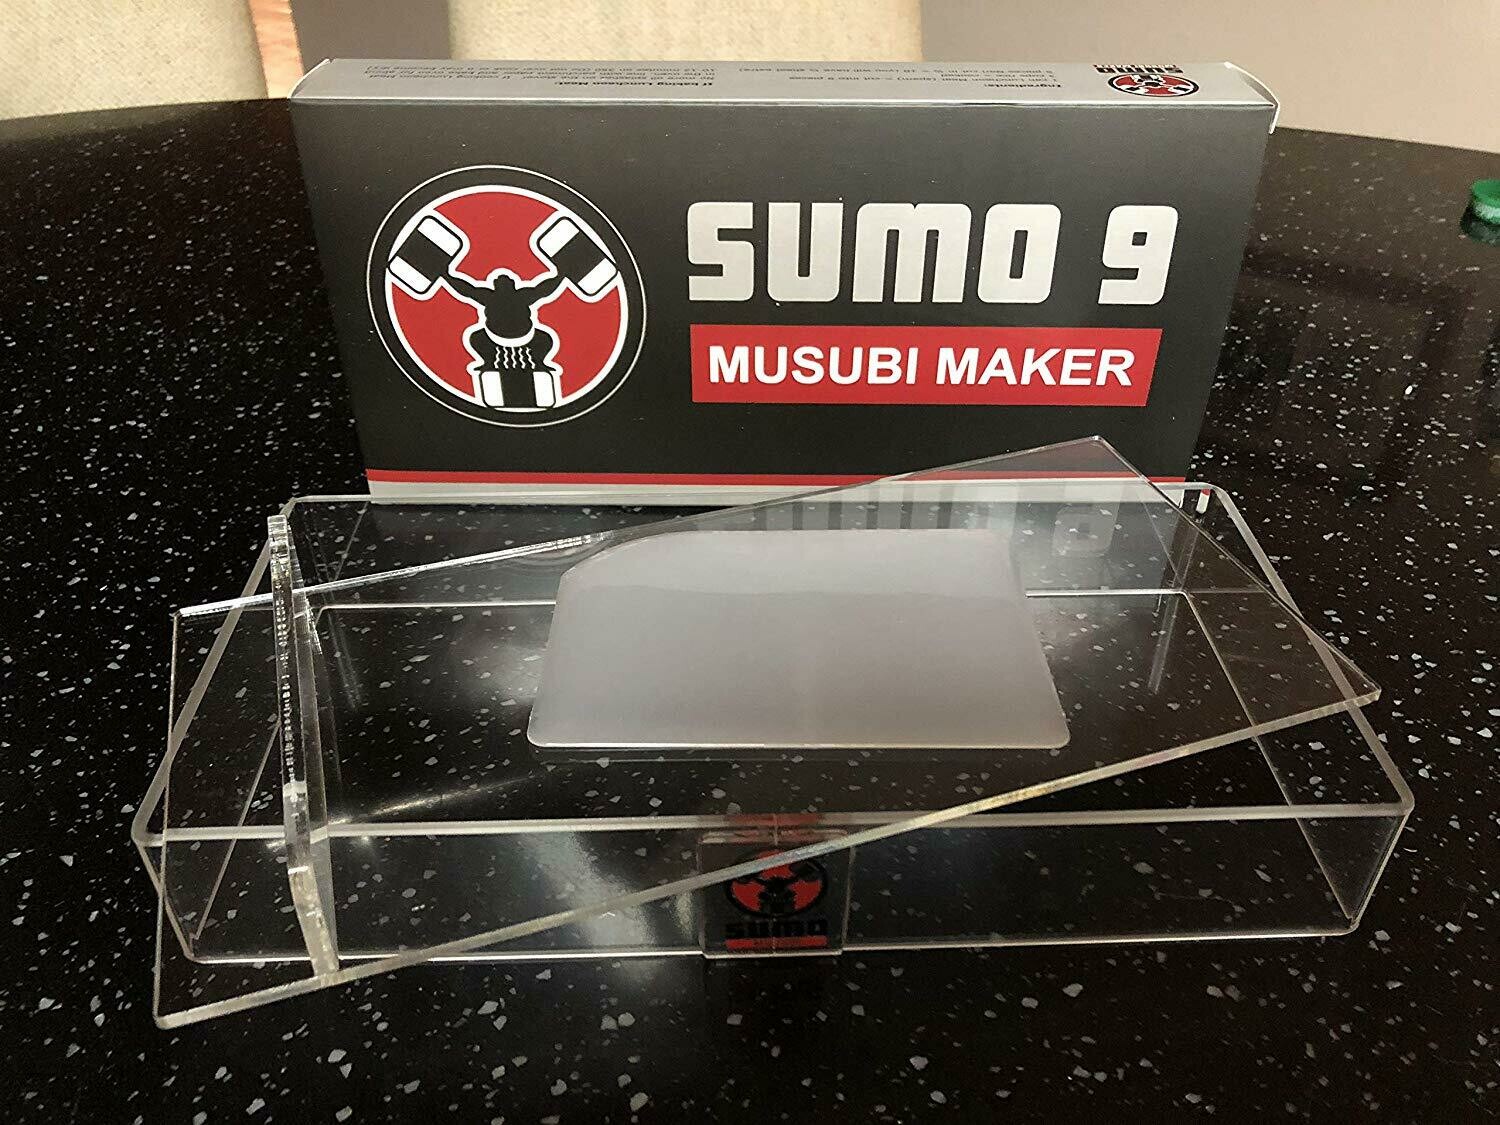 Sumo 9 Musubi Maker